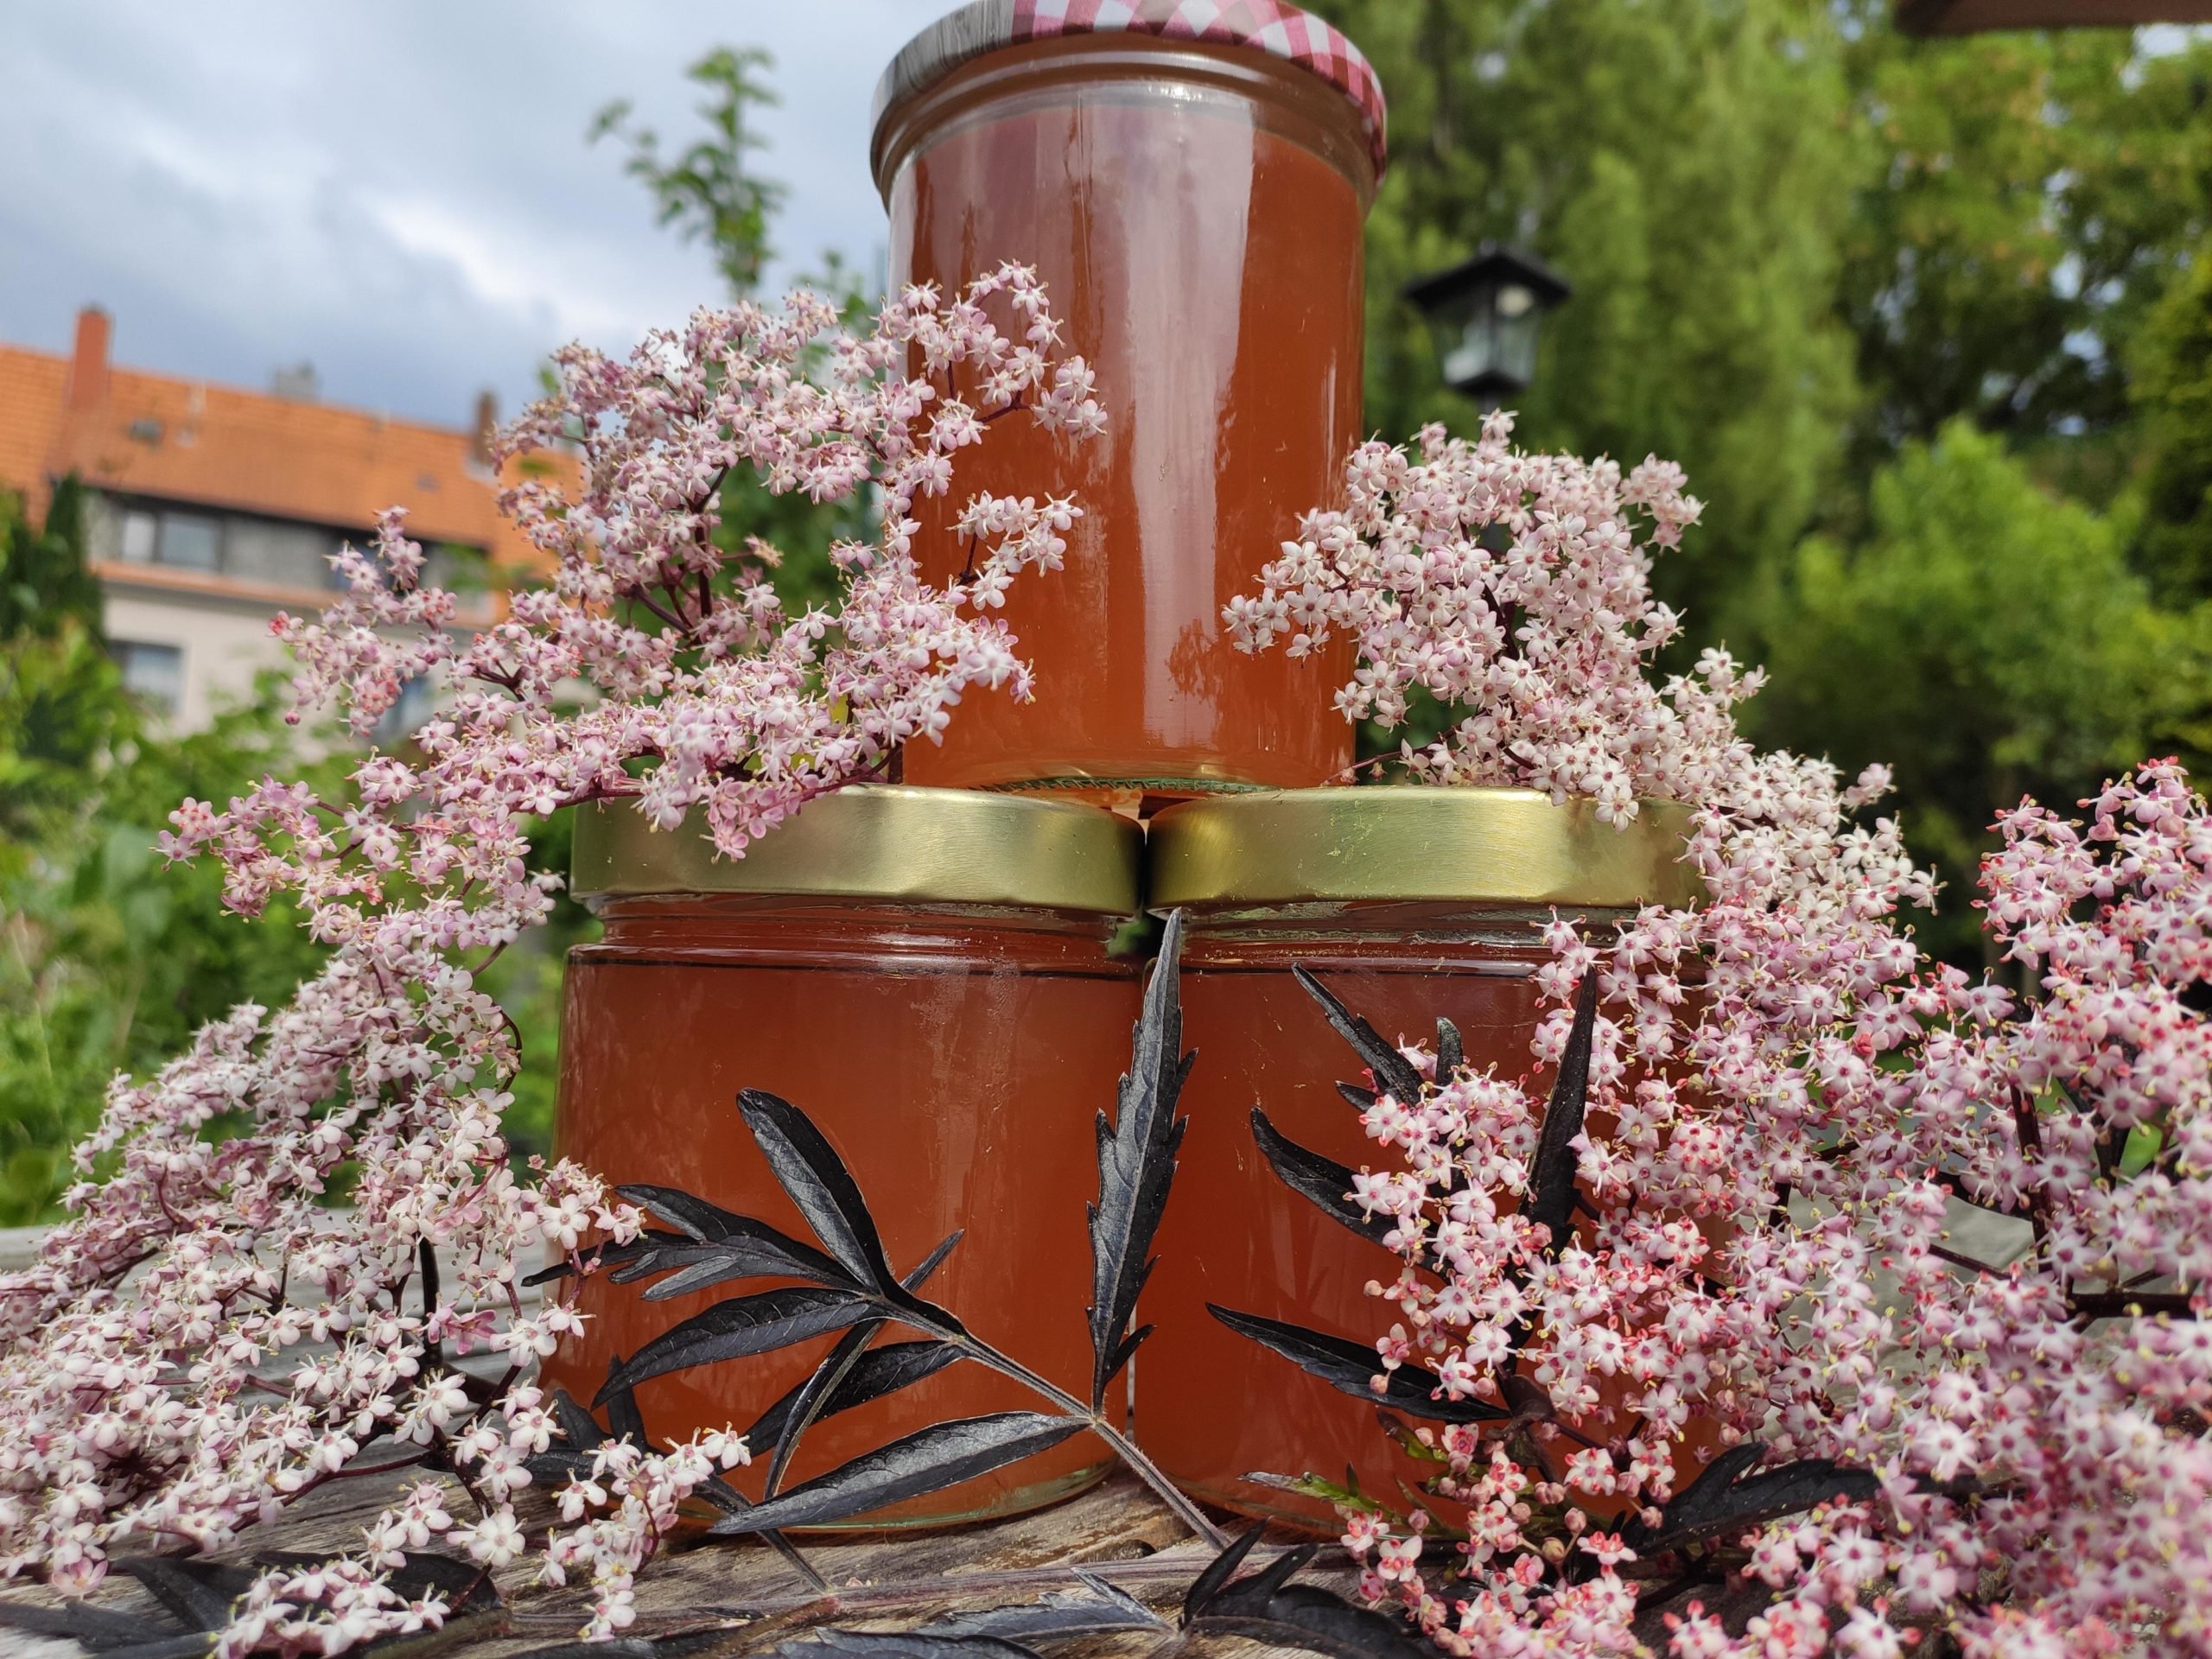 Holunderblüten-Apfelsaft-Gelee selbst herstellen - Garten im Ruhrpott